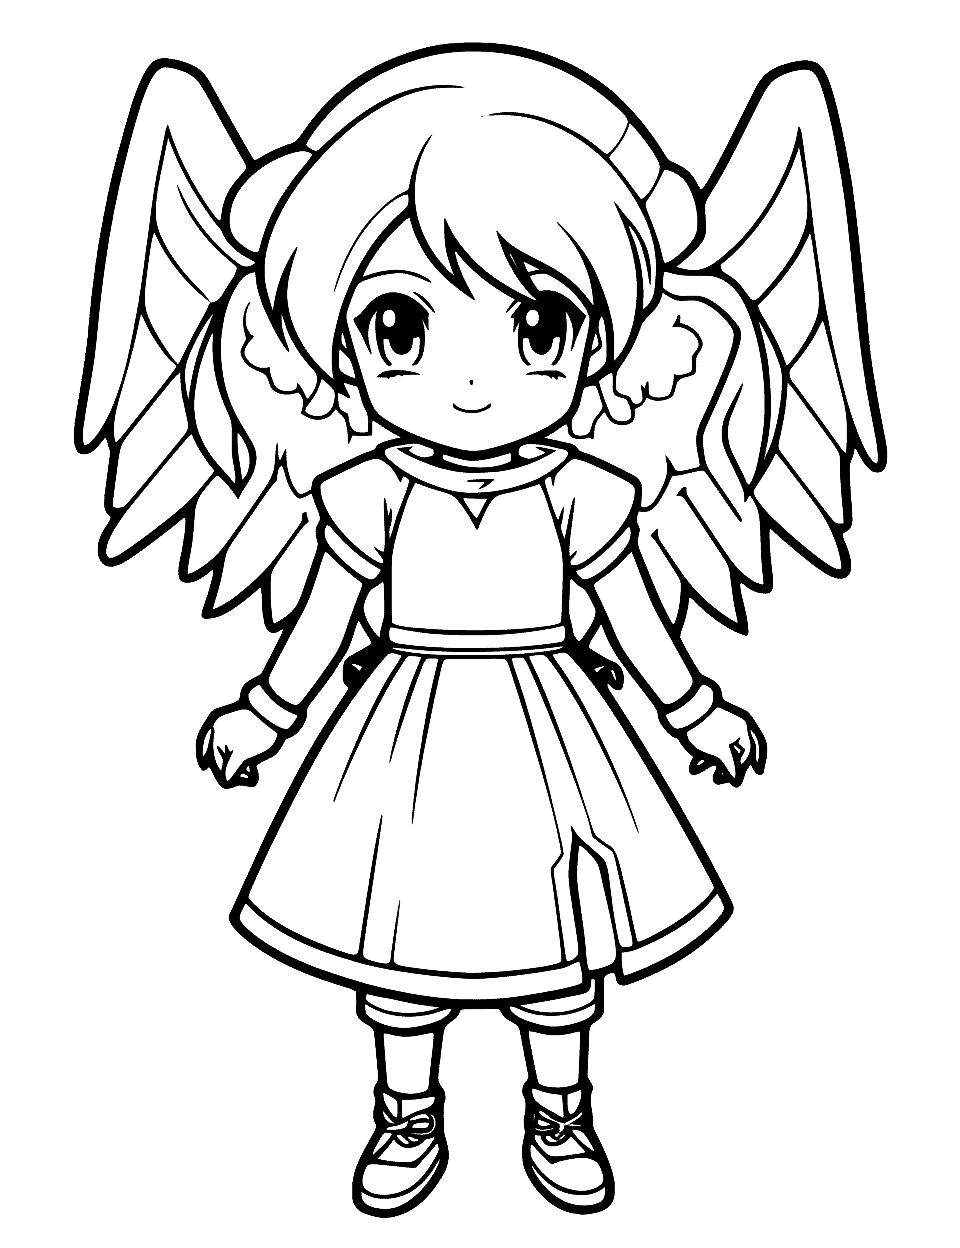 Kawaii Anime Angel Coloring Page - A Kawaii anime angel with an adorable, chubby design.